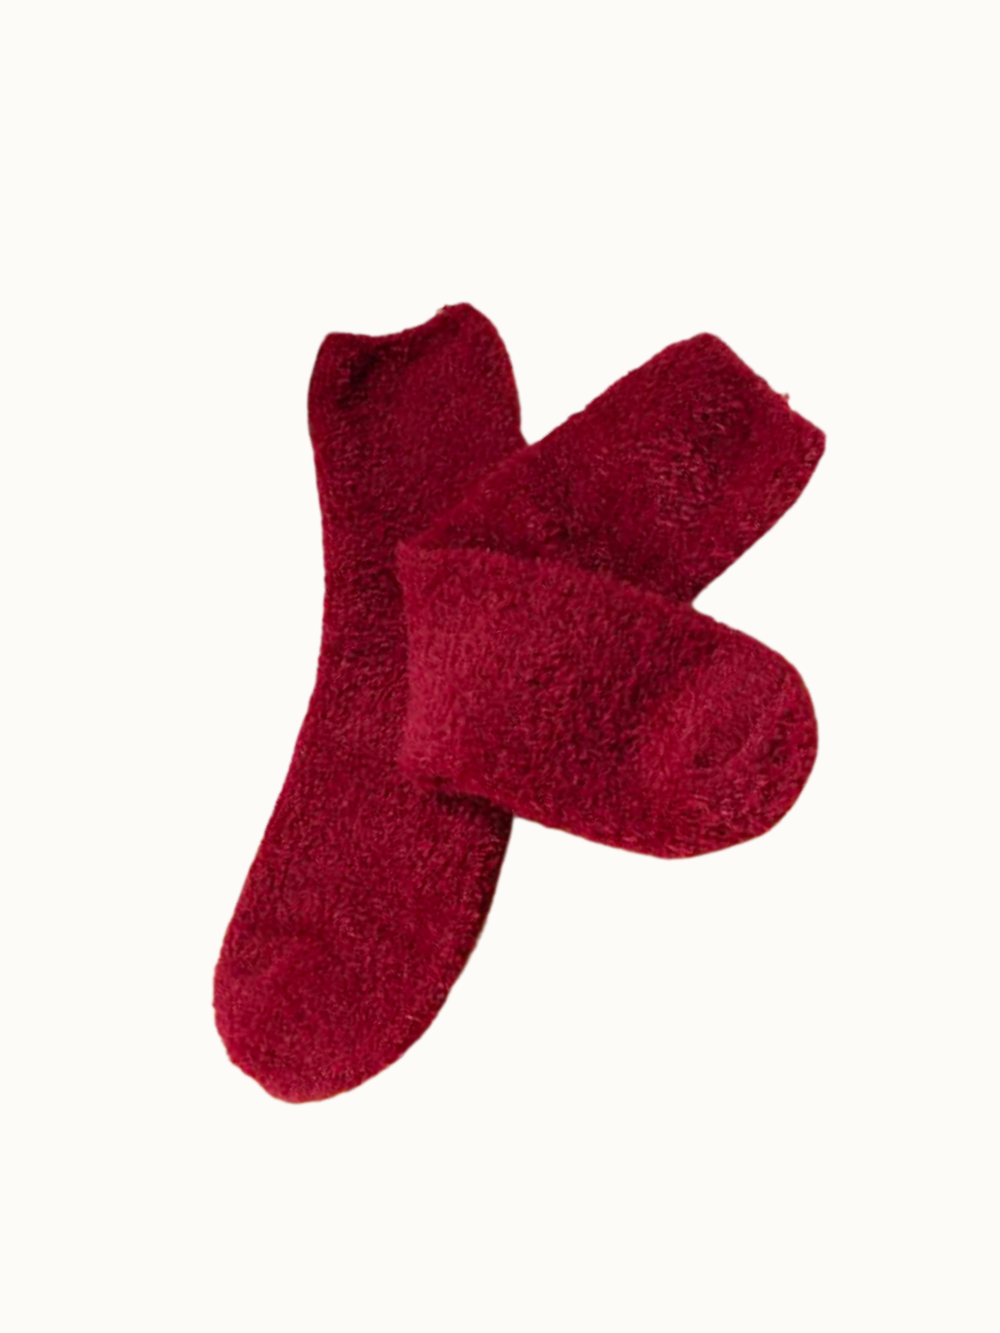 Cozy, Dream Plush socks in Merlot. 